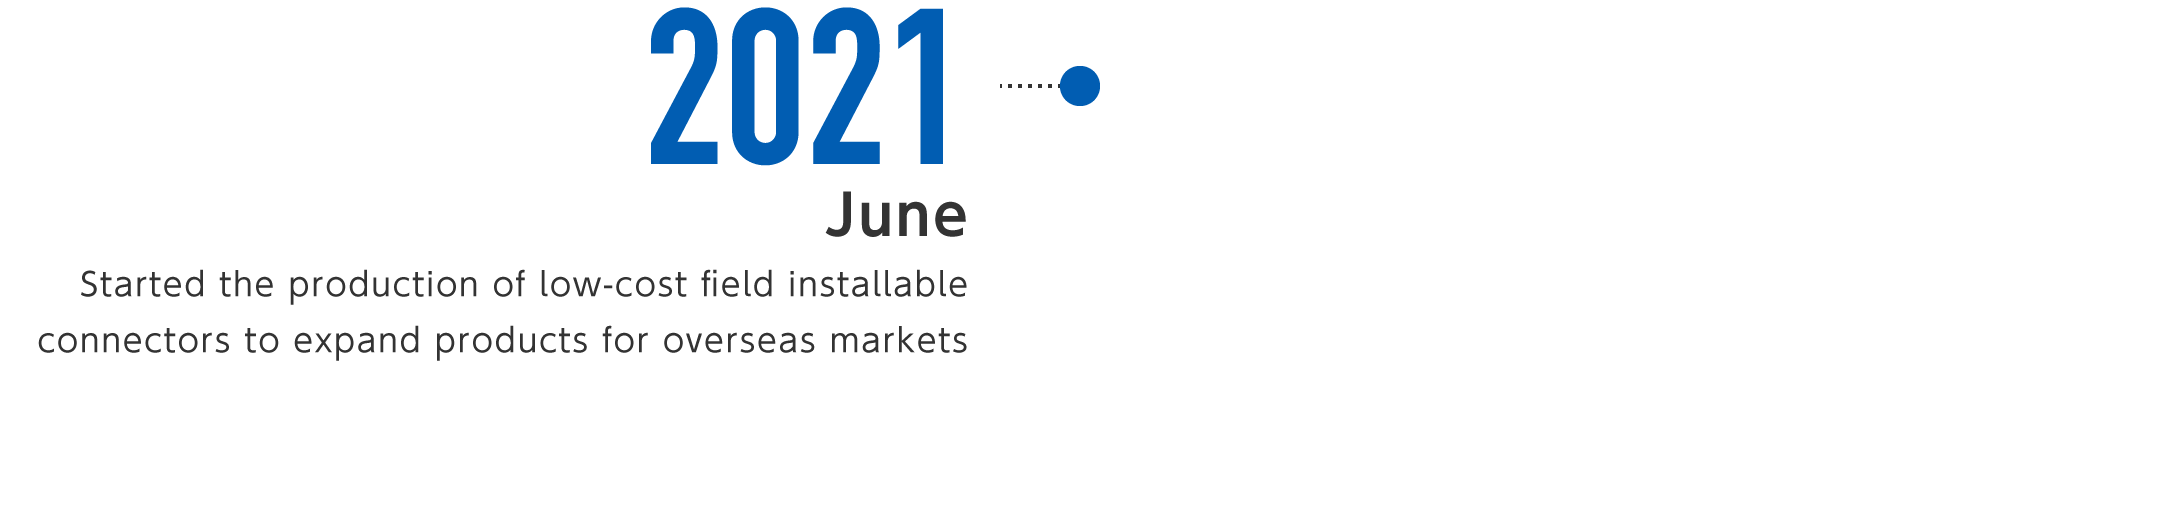 2021年6月-海外市場向け拡大のため、低コスト版現地組立型コネクタの製造を開始